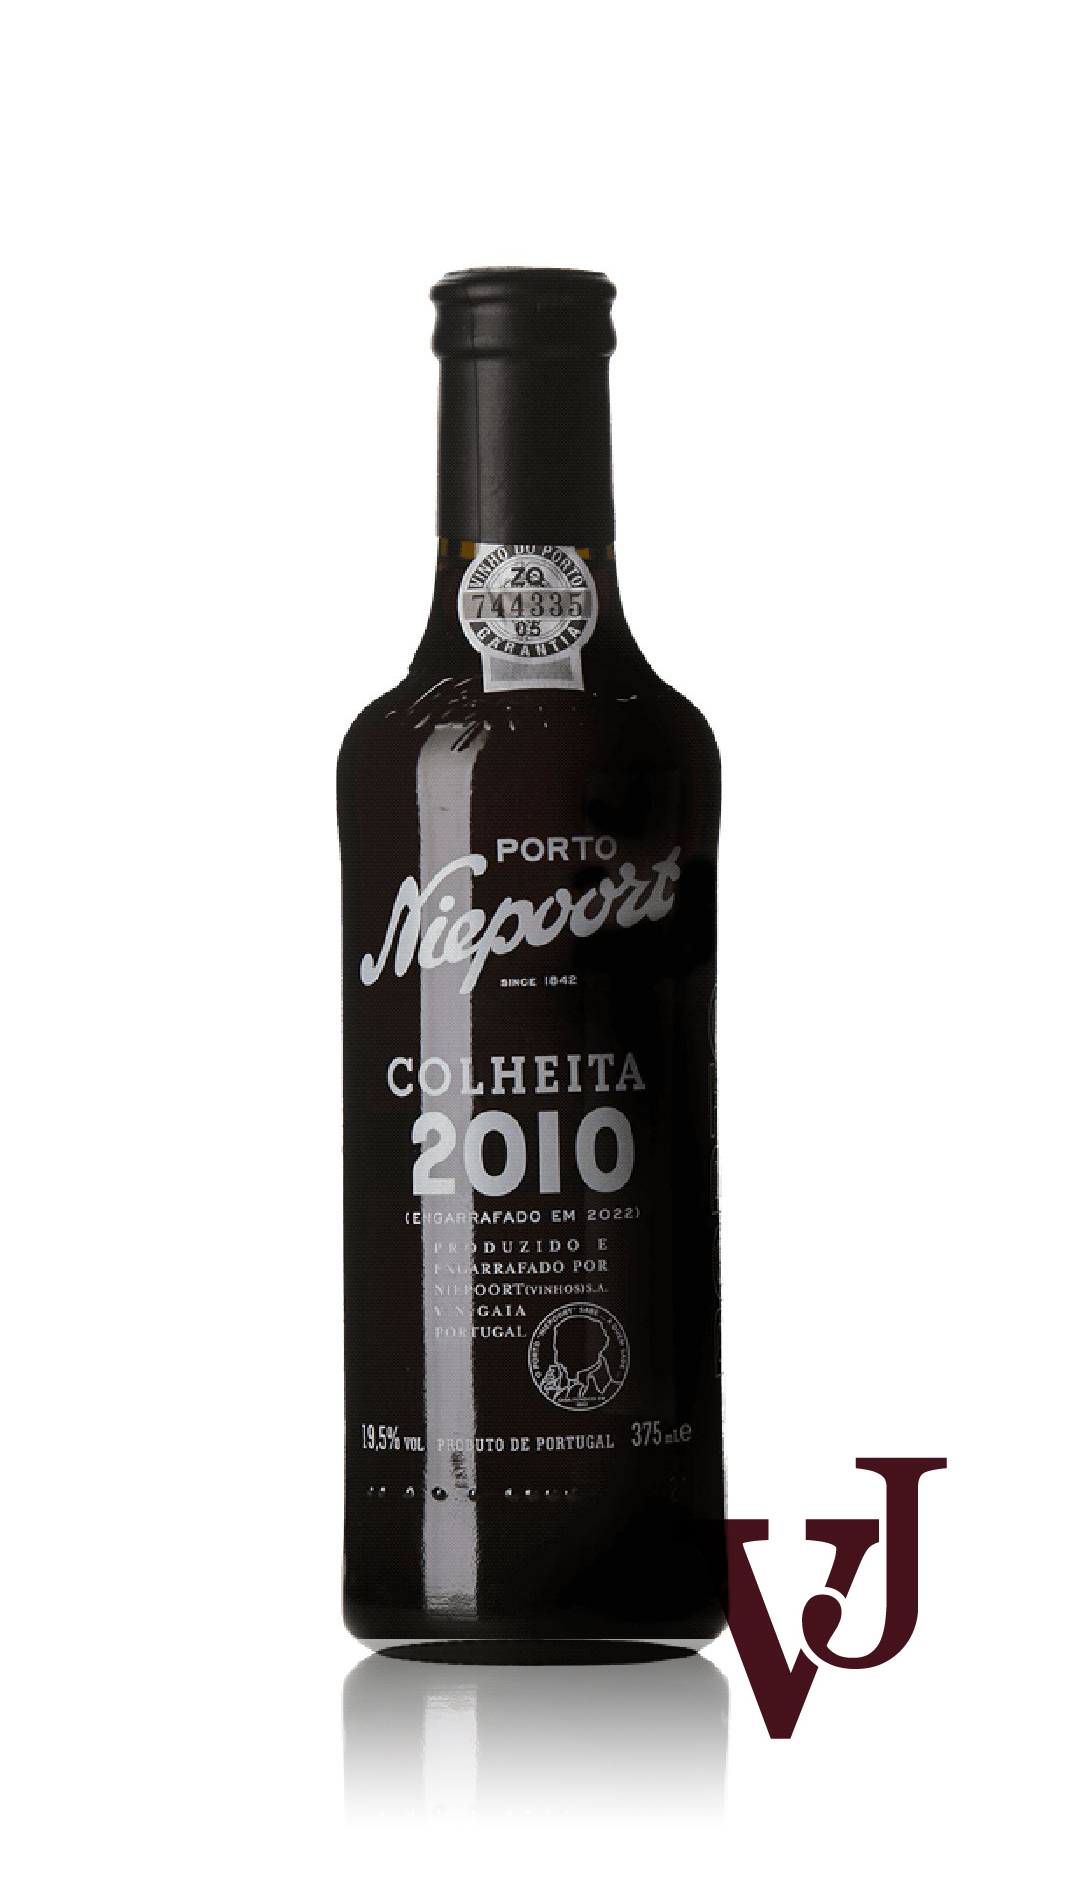 Övrigt Vin - Niepoort Colheita 2010 artikel nummer 9369502 från producenten Niepoort Vinhos från Portugal.